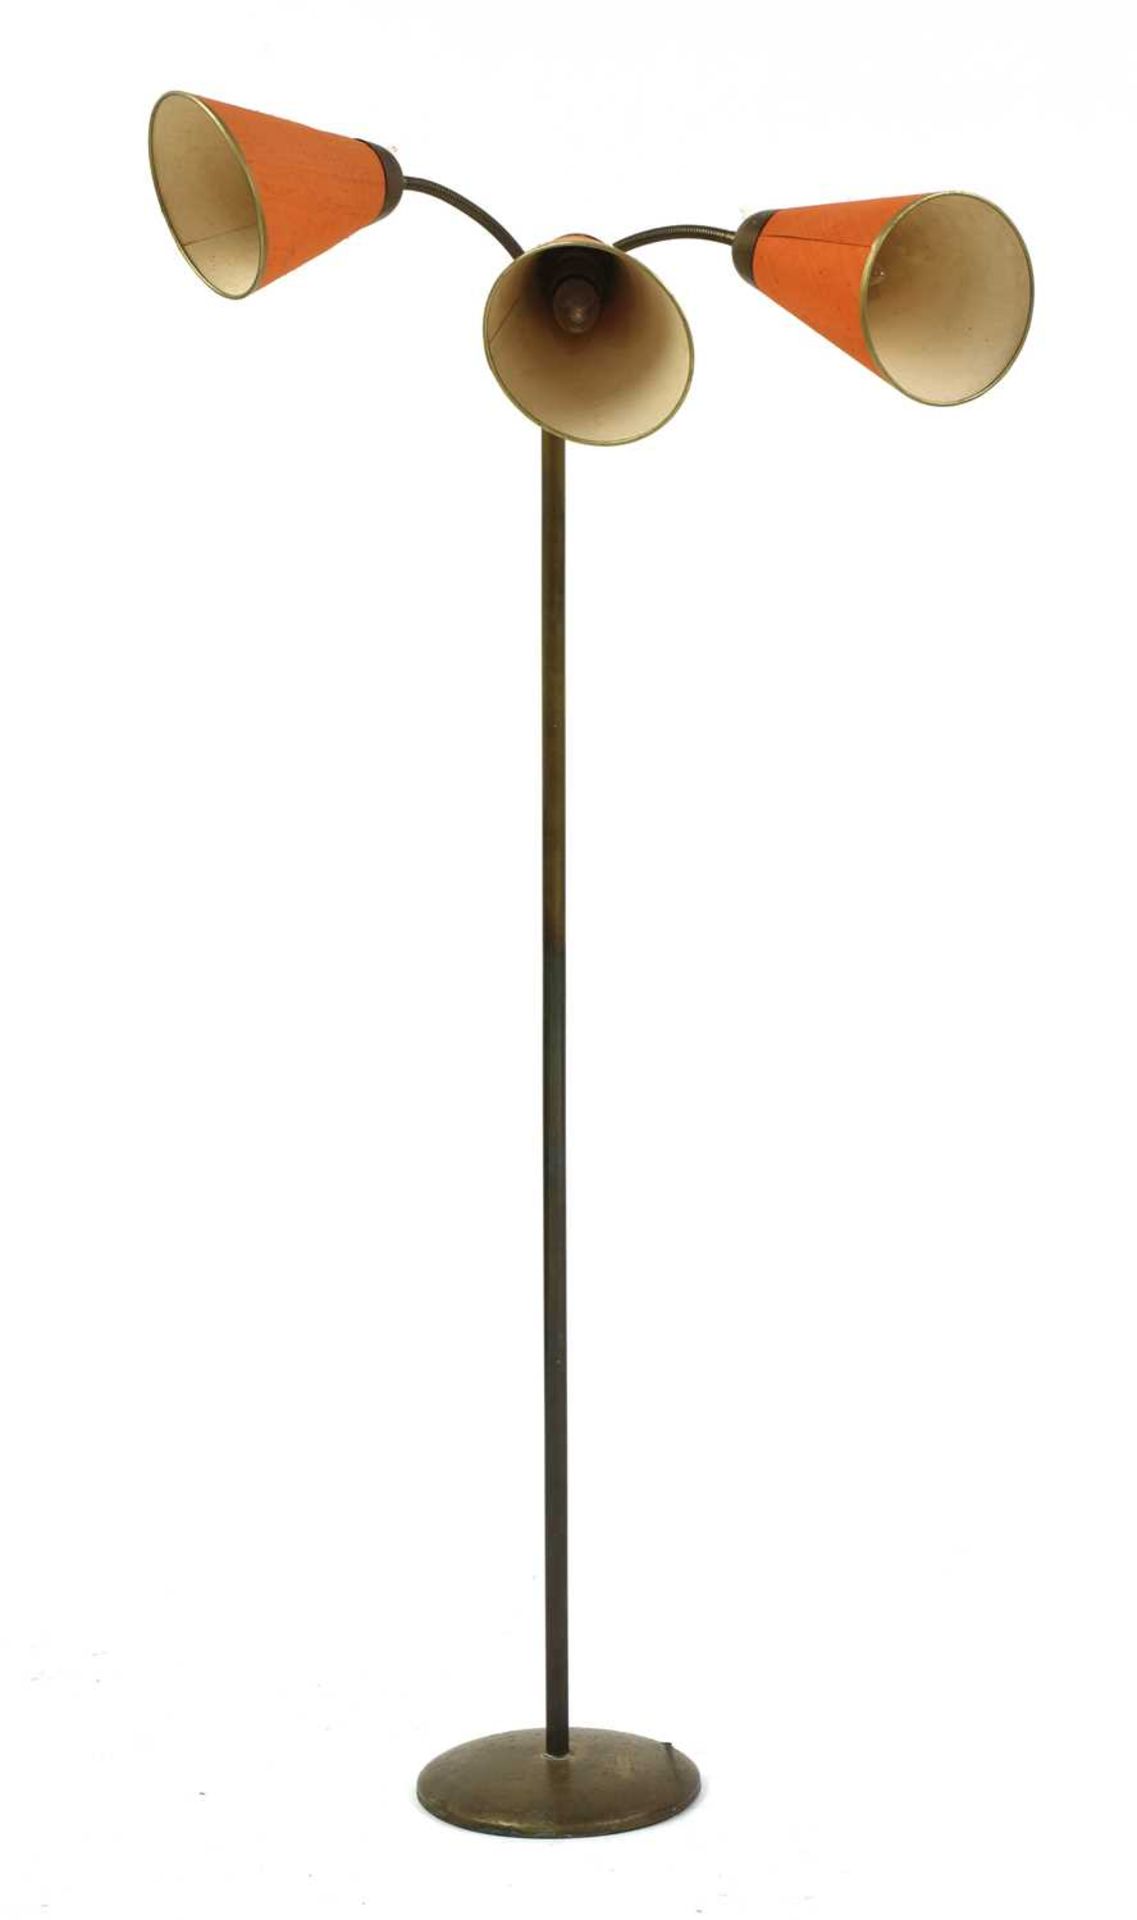 A standard lamp,